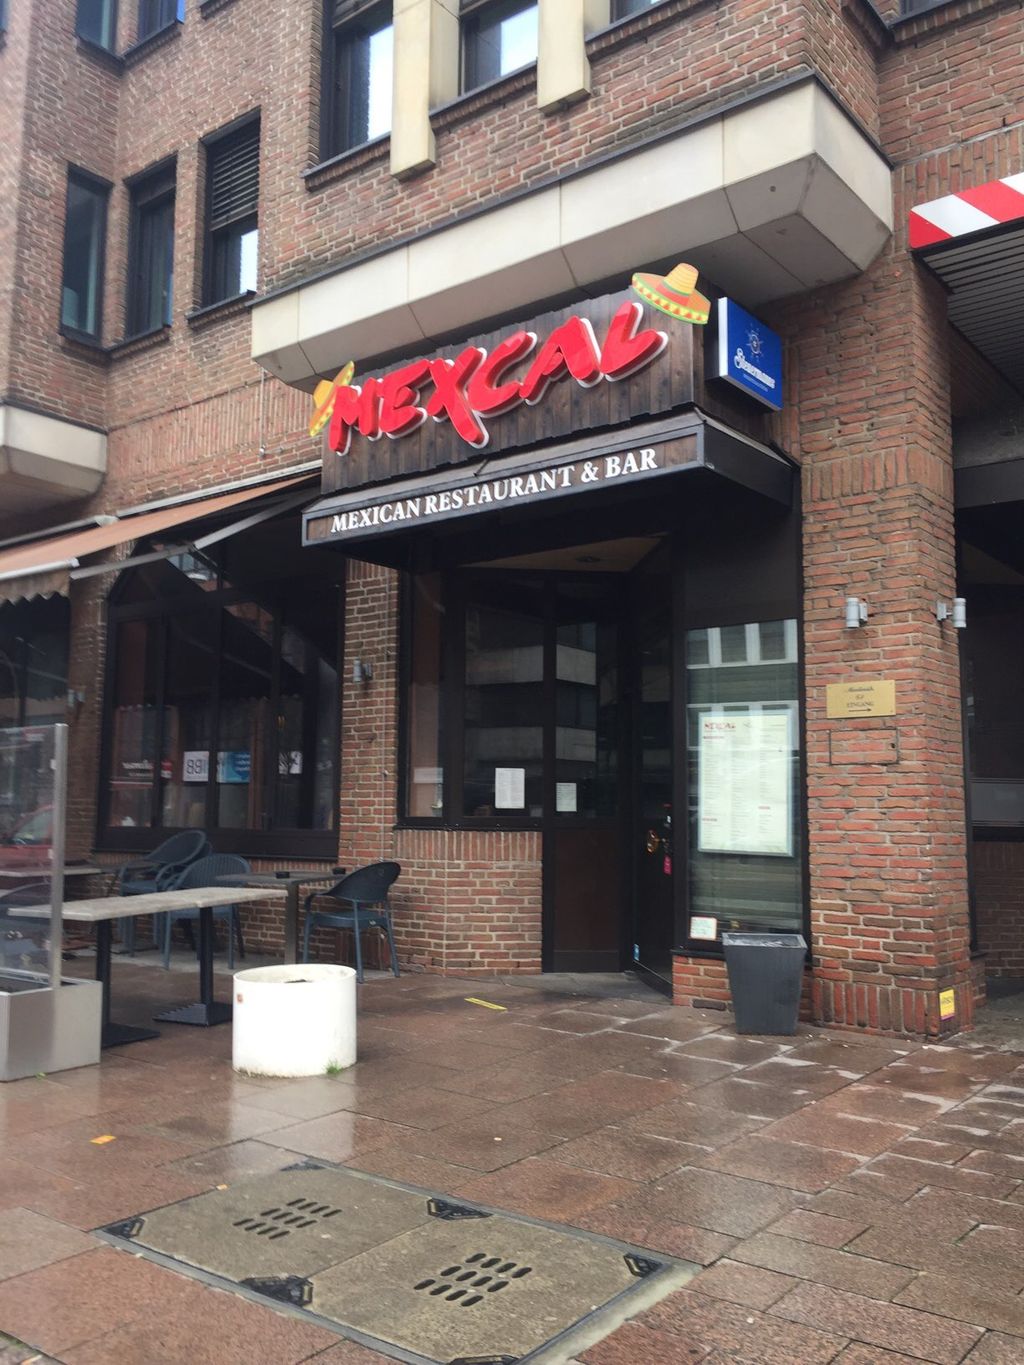 Nutzerfoto 1 Mexcal Mexikanisches Restaurant